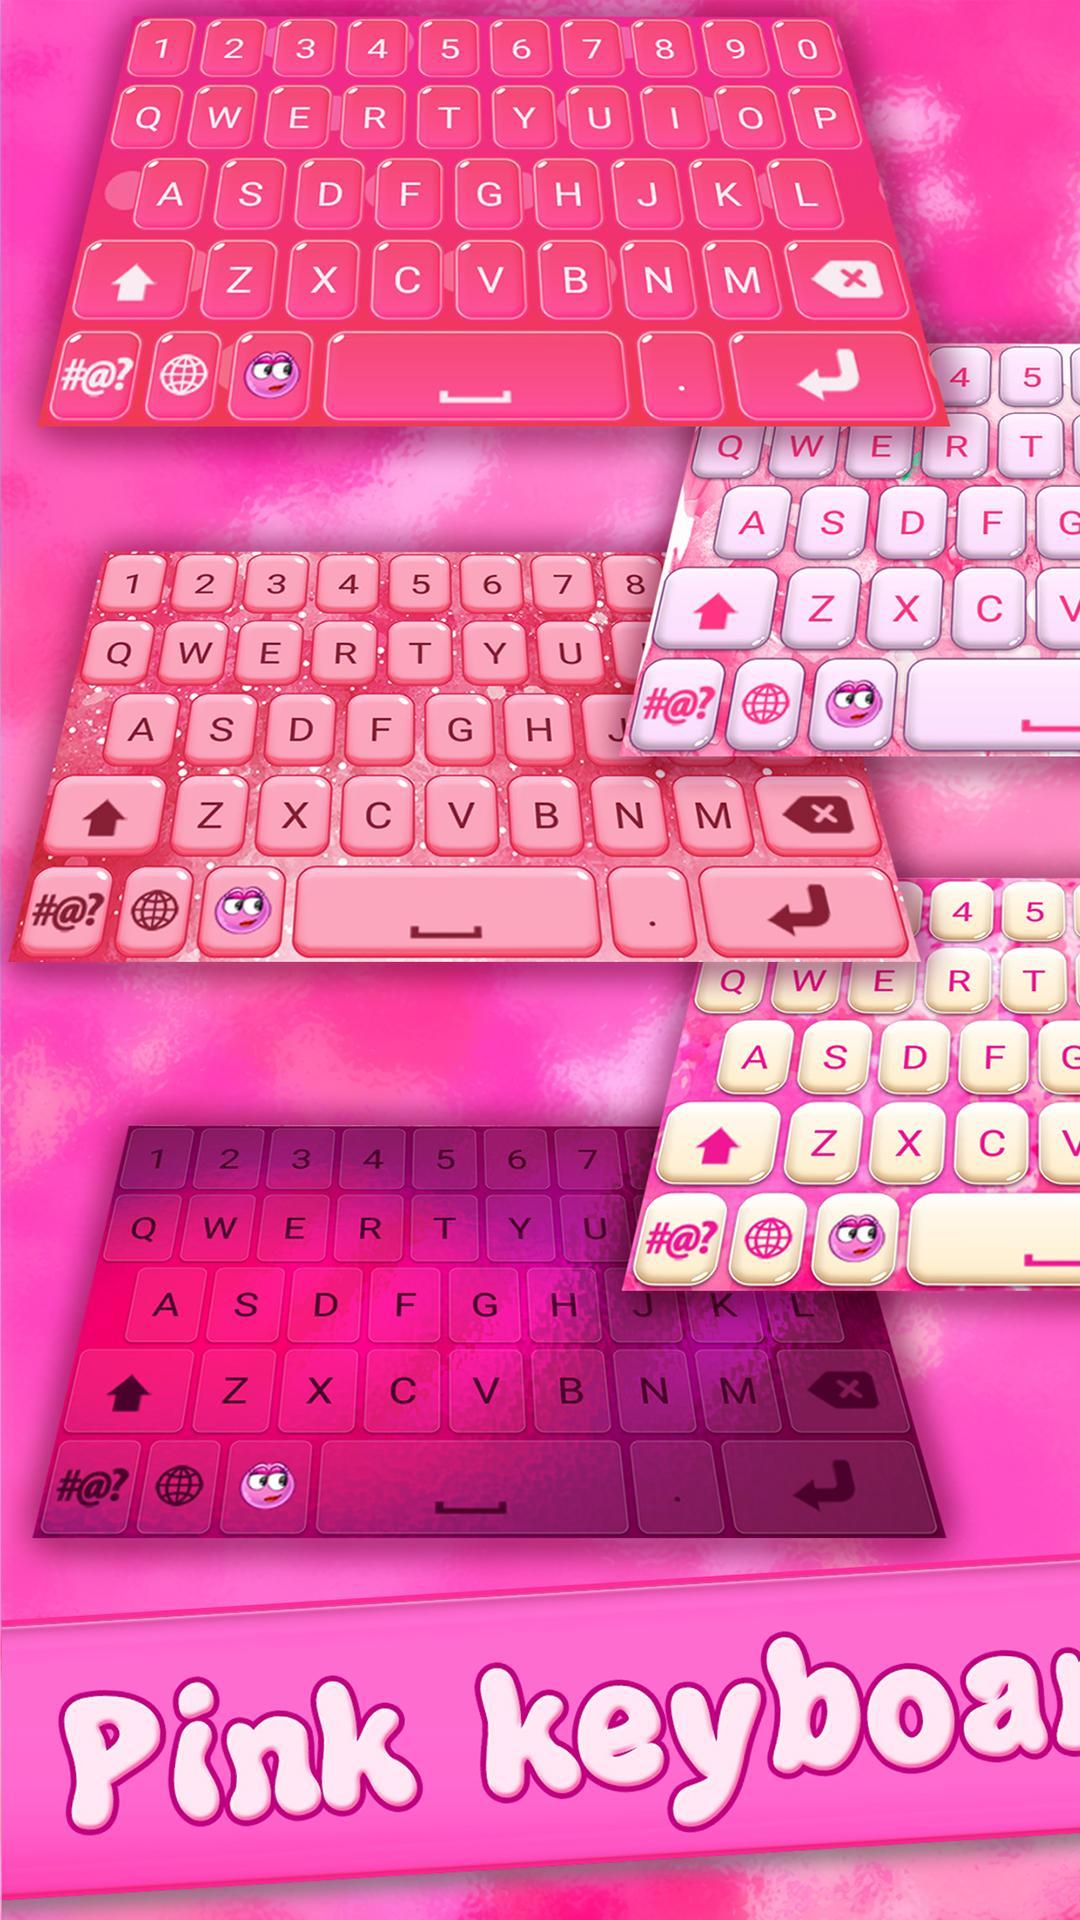 Ứng dụng bàn phím điện thoại hồng cho các cô gái: Ứng dụng bàn phím điện thoại hồng là sự lựa chọn hoàn hảo cho các cô gái yêu thích màu sắc hồng tươi sáng. Với thiết kế đơn giản, dễ sử dụng và tính năng đa dạng, ứng dụng sẽ giúp bạn tận hưởng những trải nghiệm tuyệt vời khi gõ chữ và trò chuyện với bạn bè.